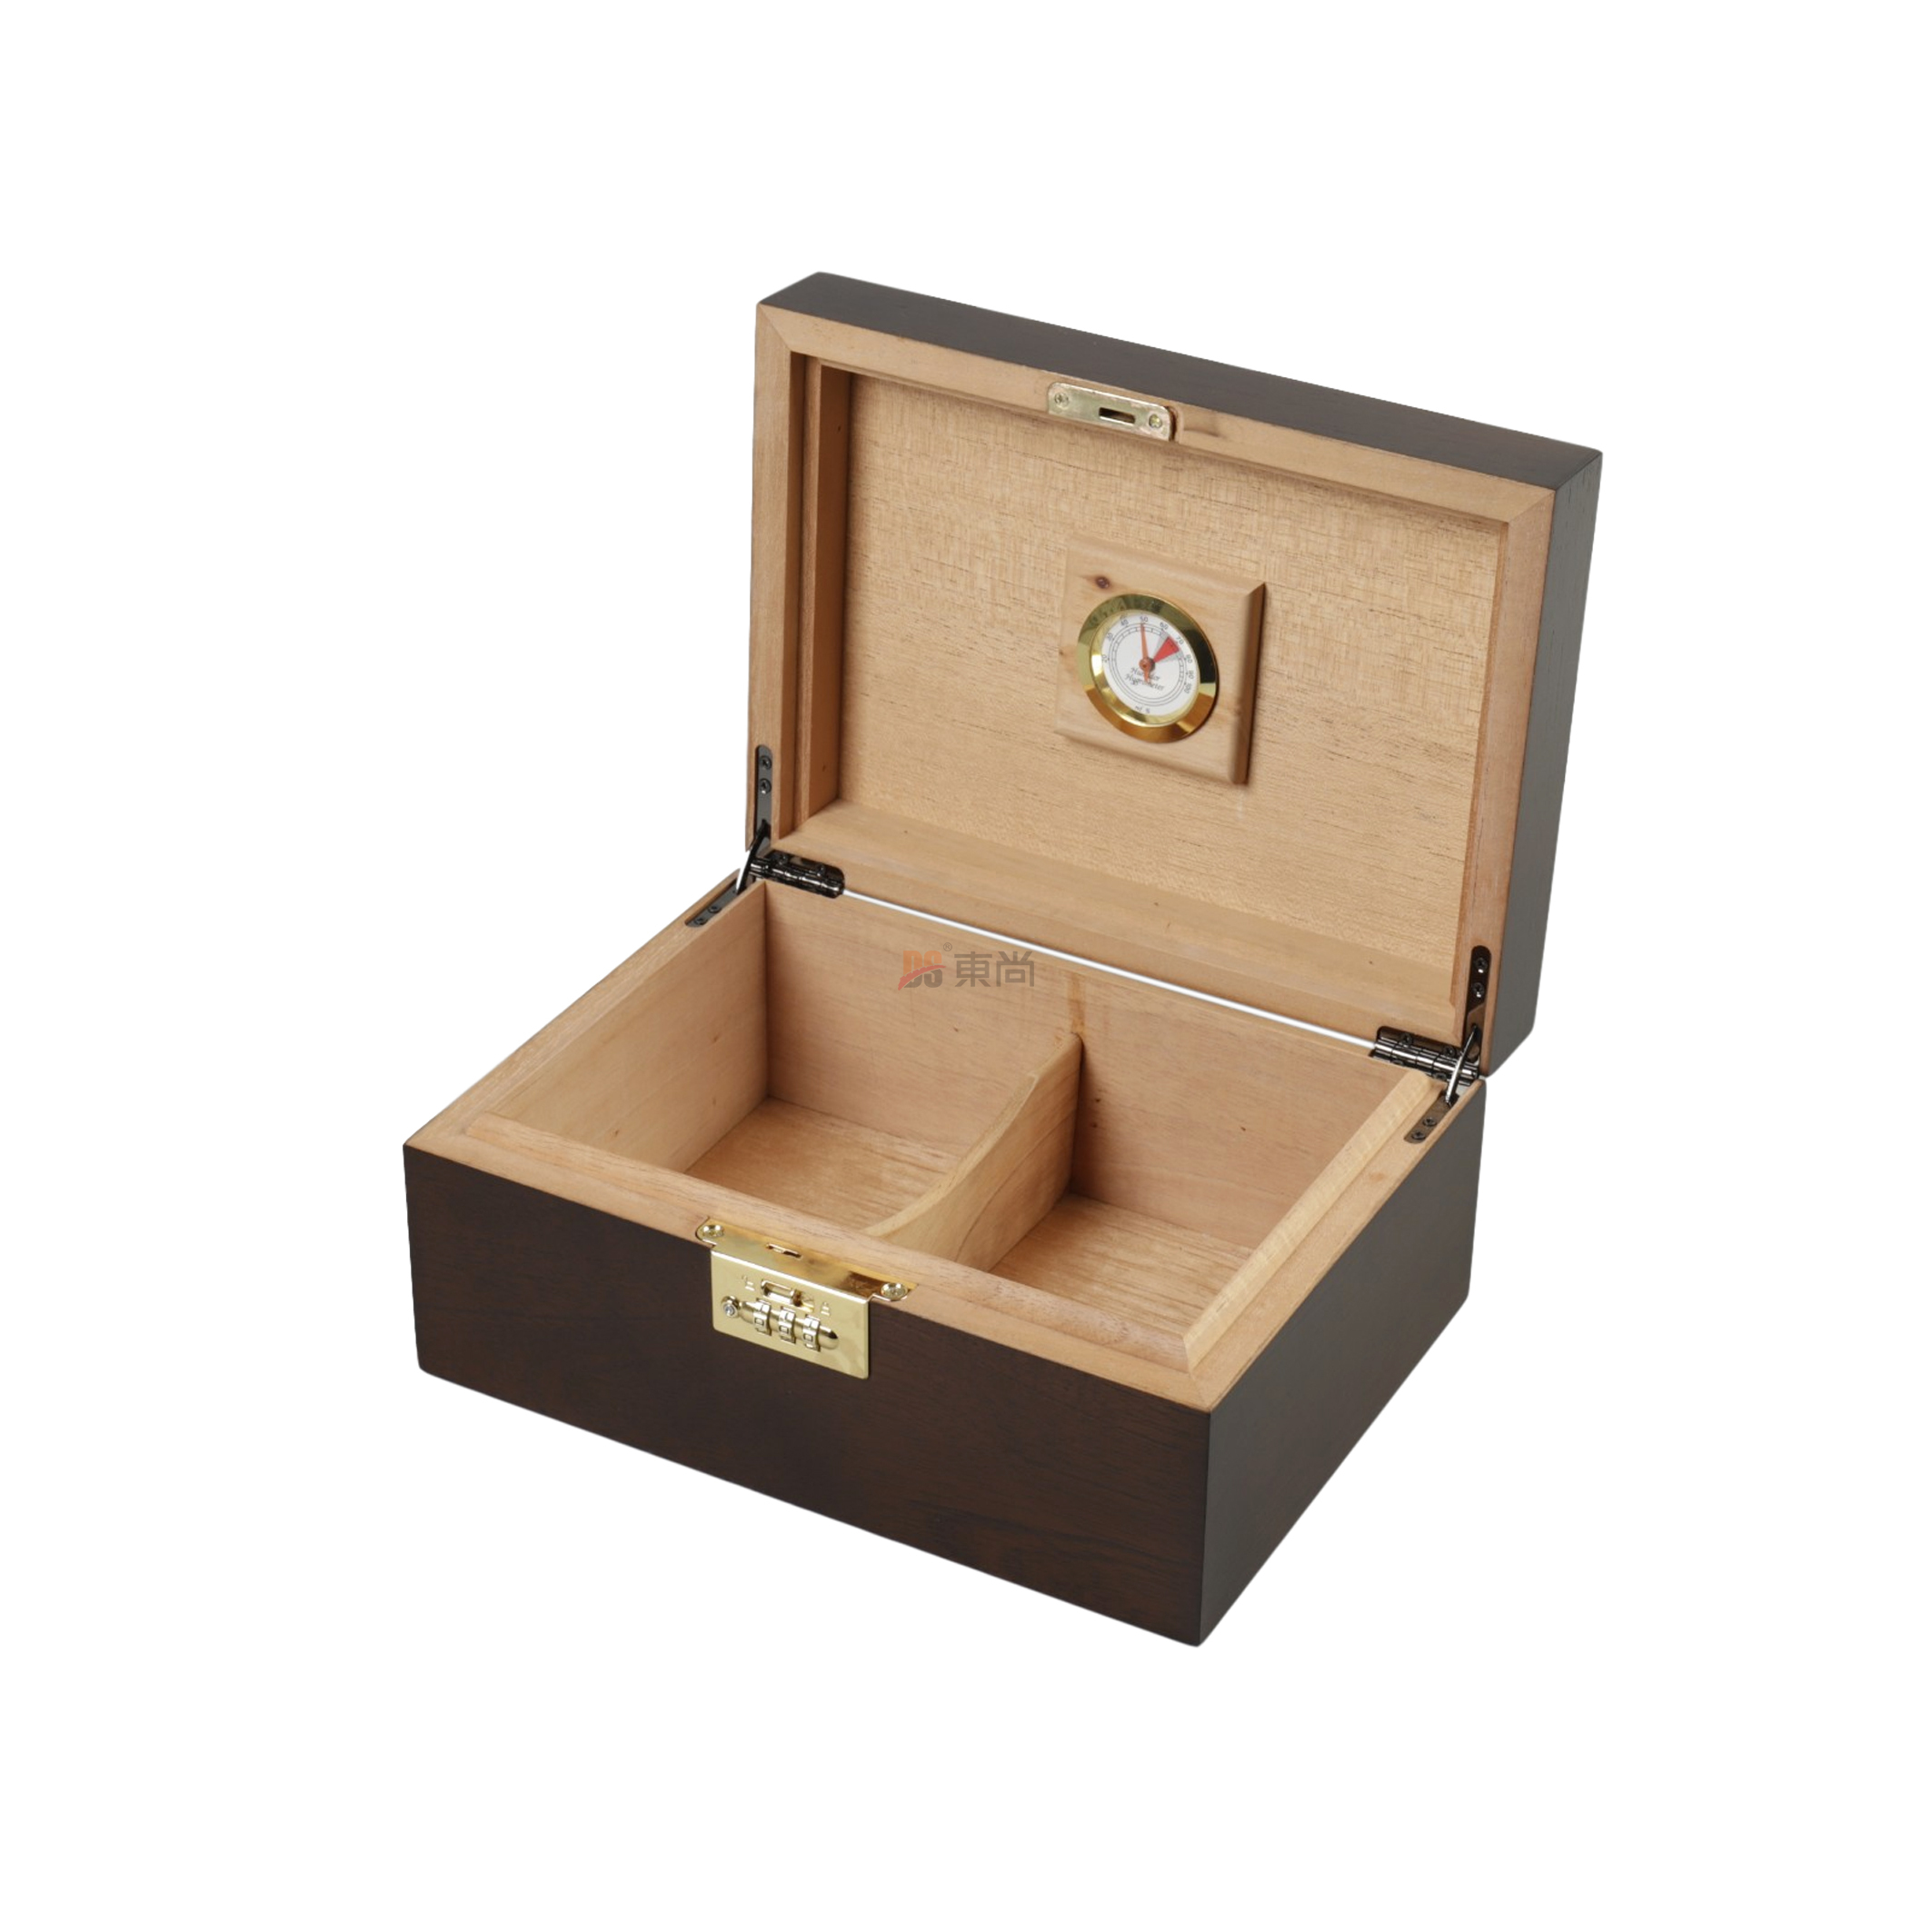 DSC-1006五金密碼鎖豪華高檔定制雕刻木制雪茄盒